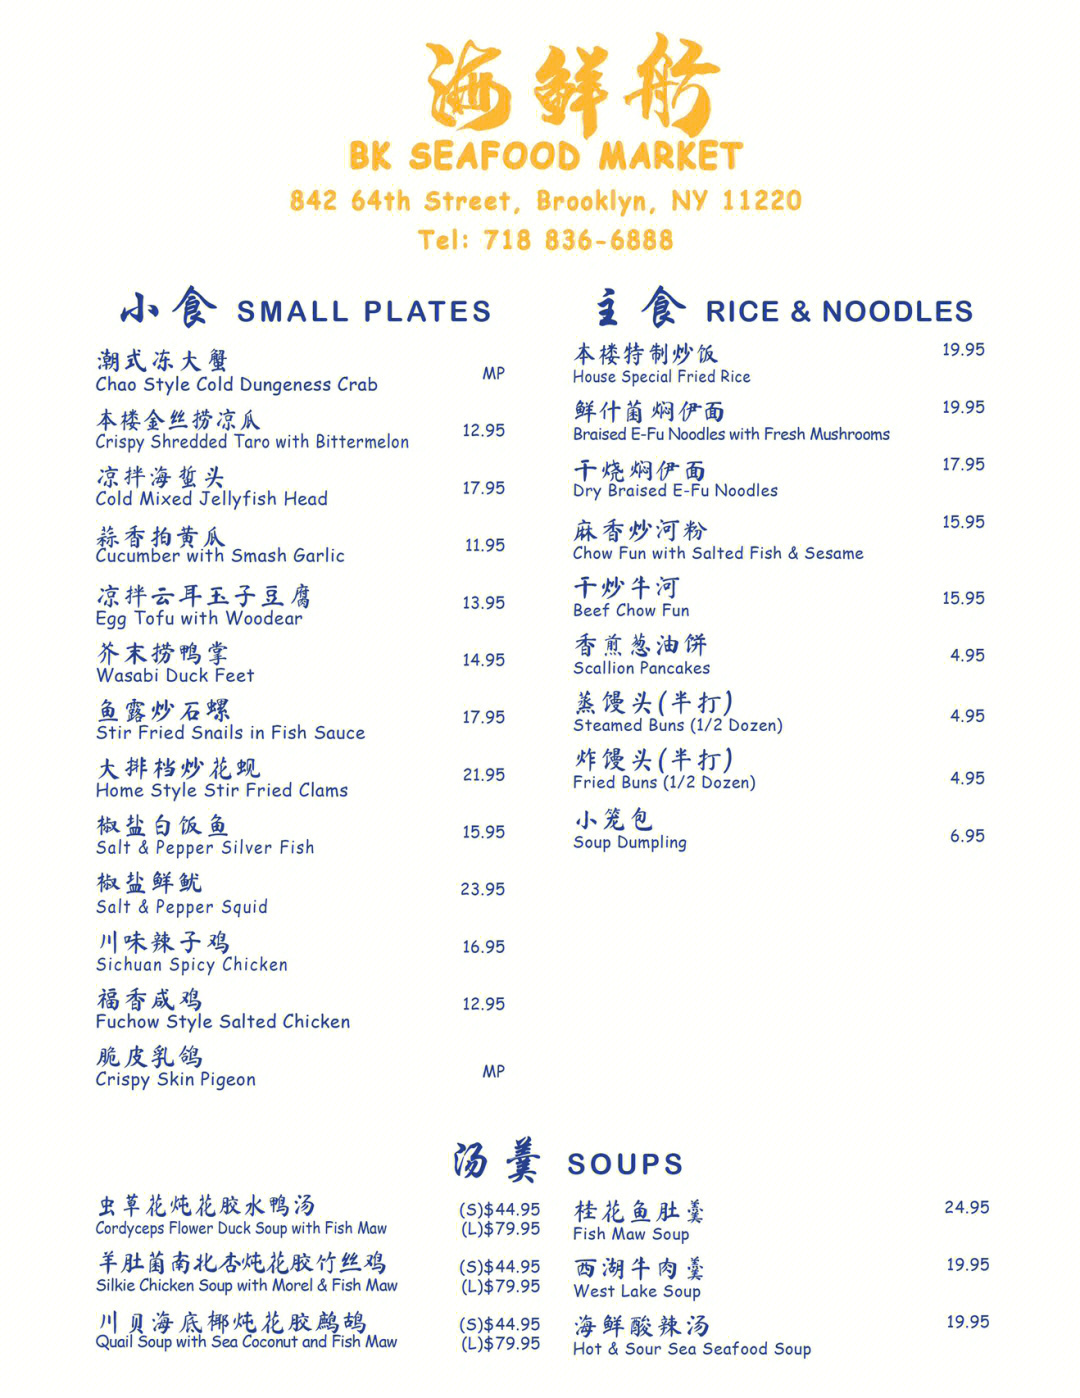 锦州南海渔港酒店菜单图片